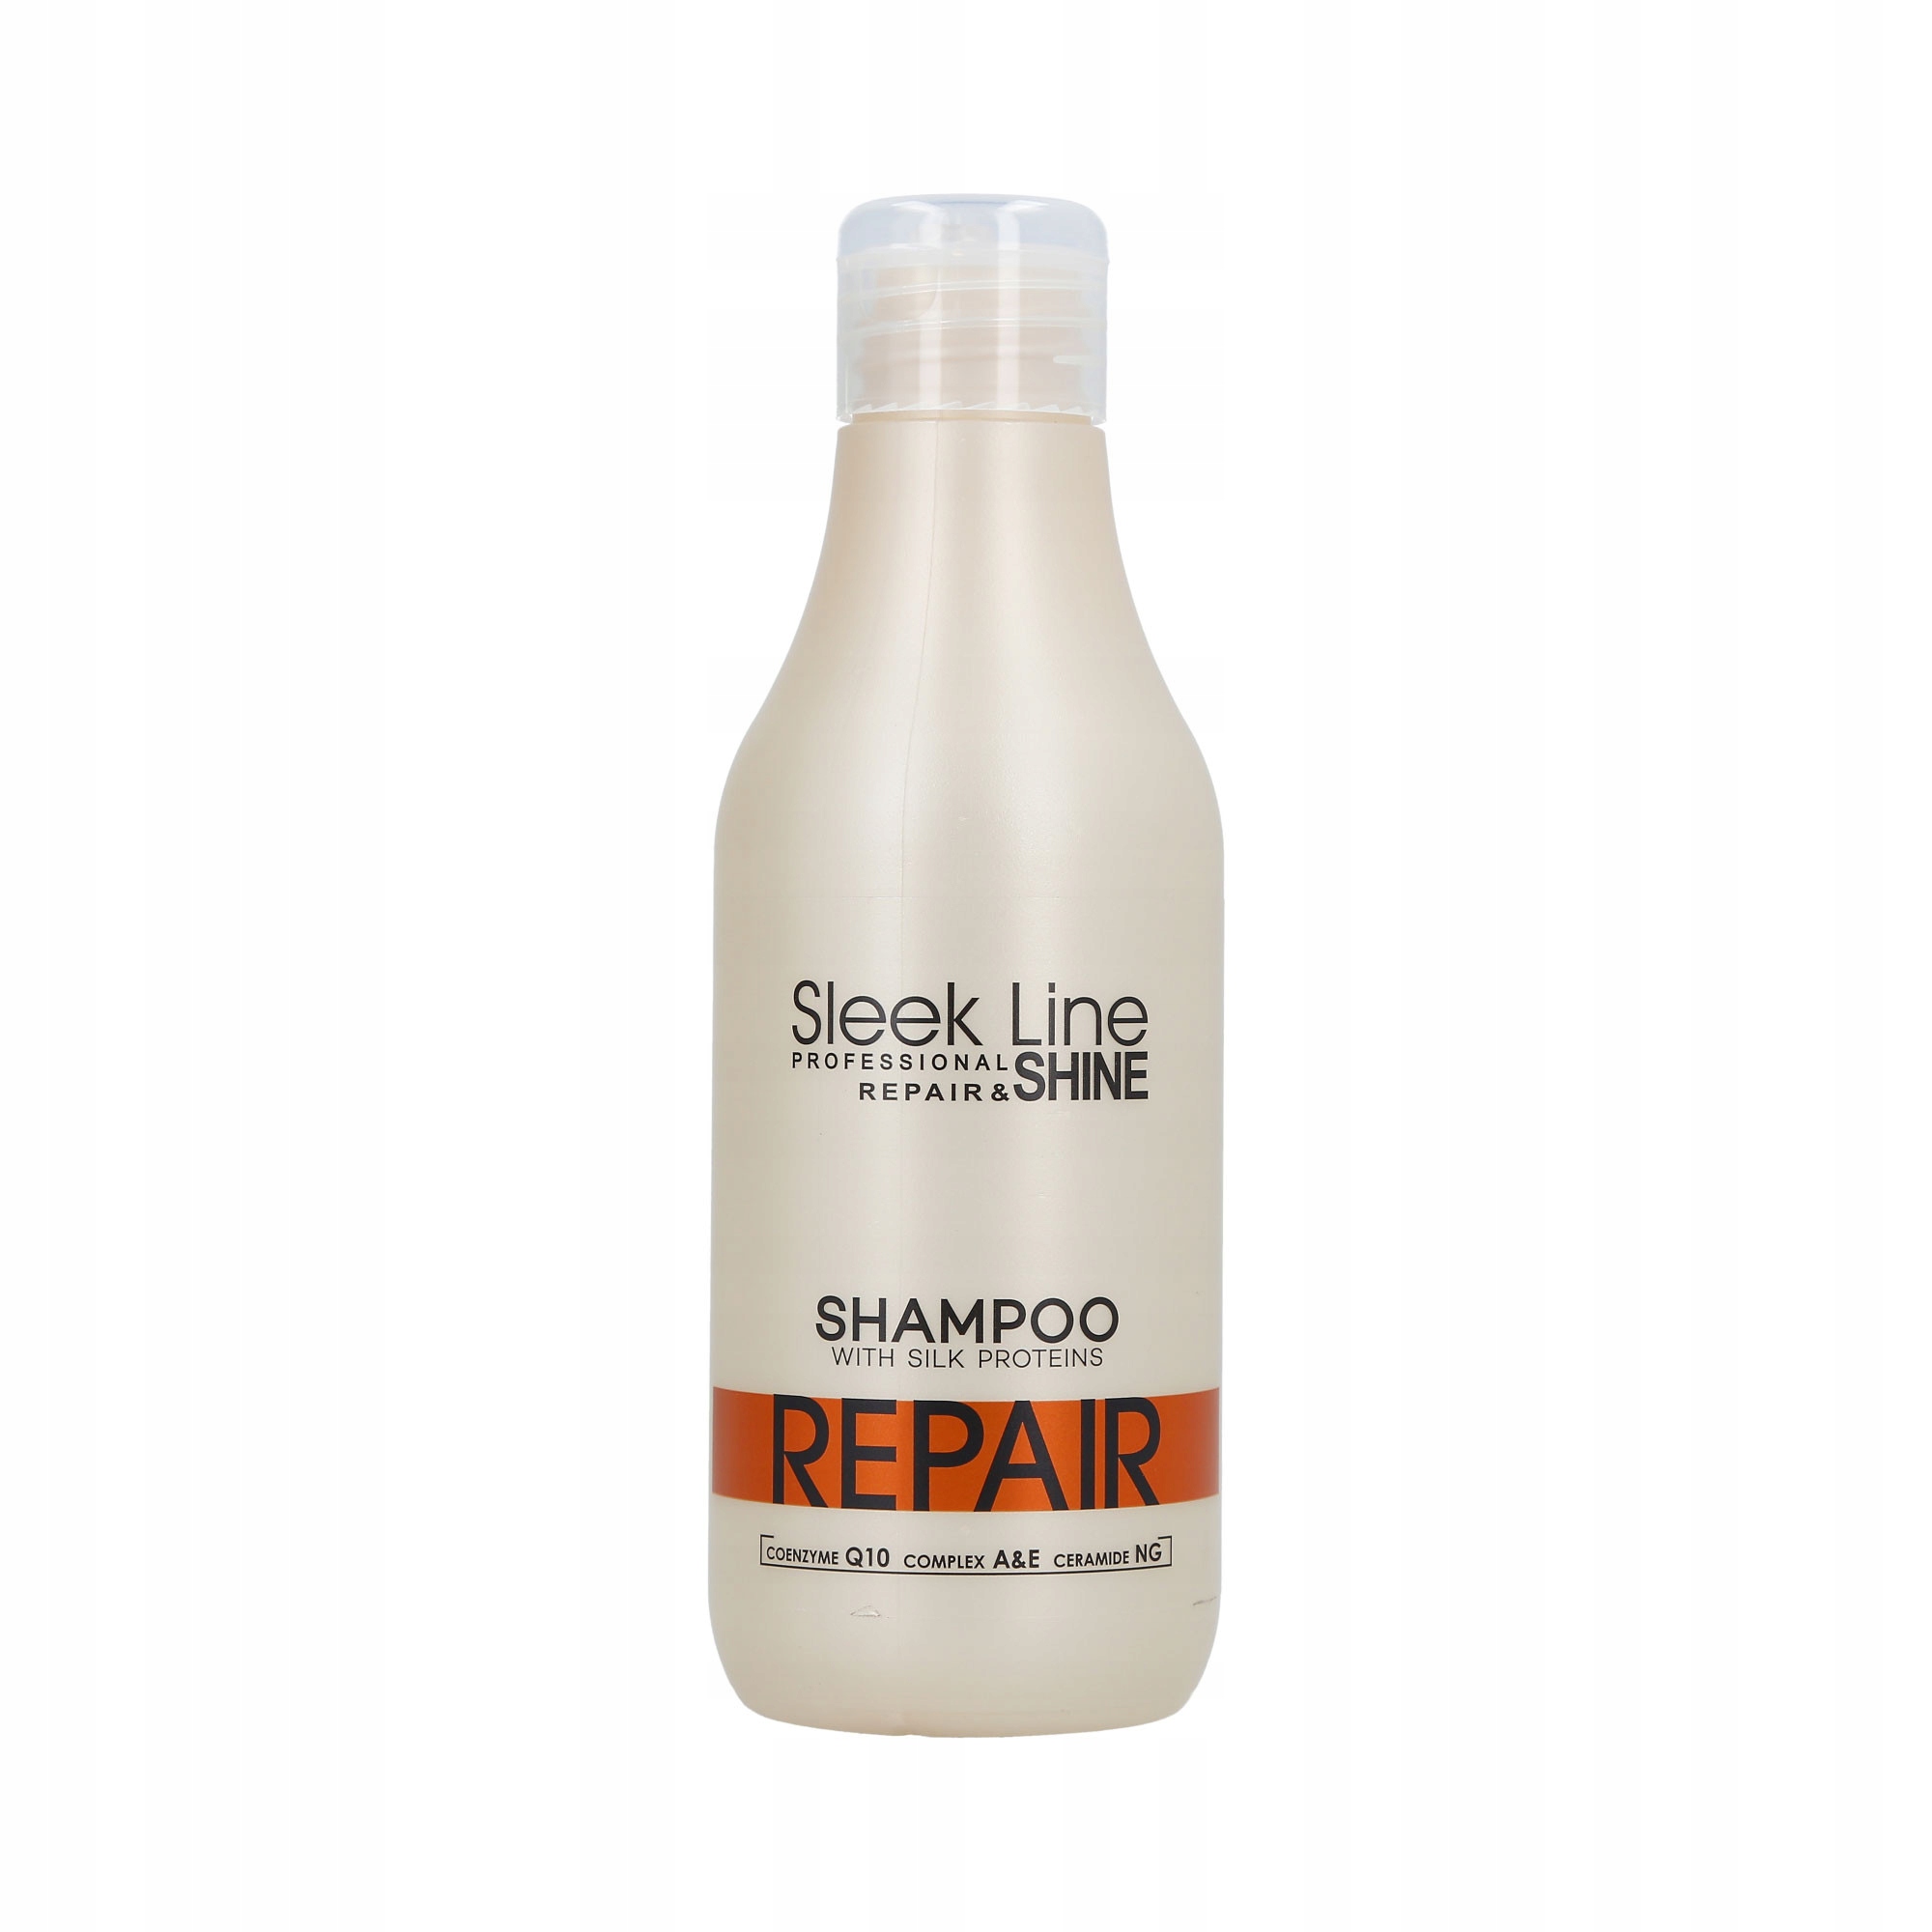 stapiz sleek line shampoo repair szampon do włosów z jedwabiem